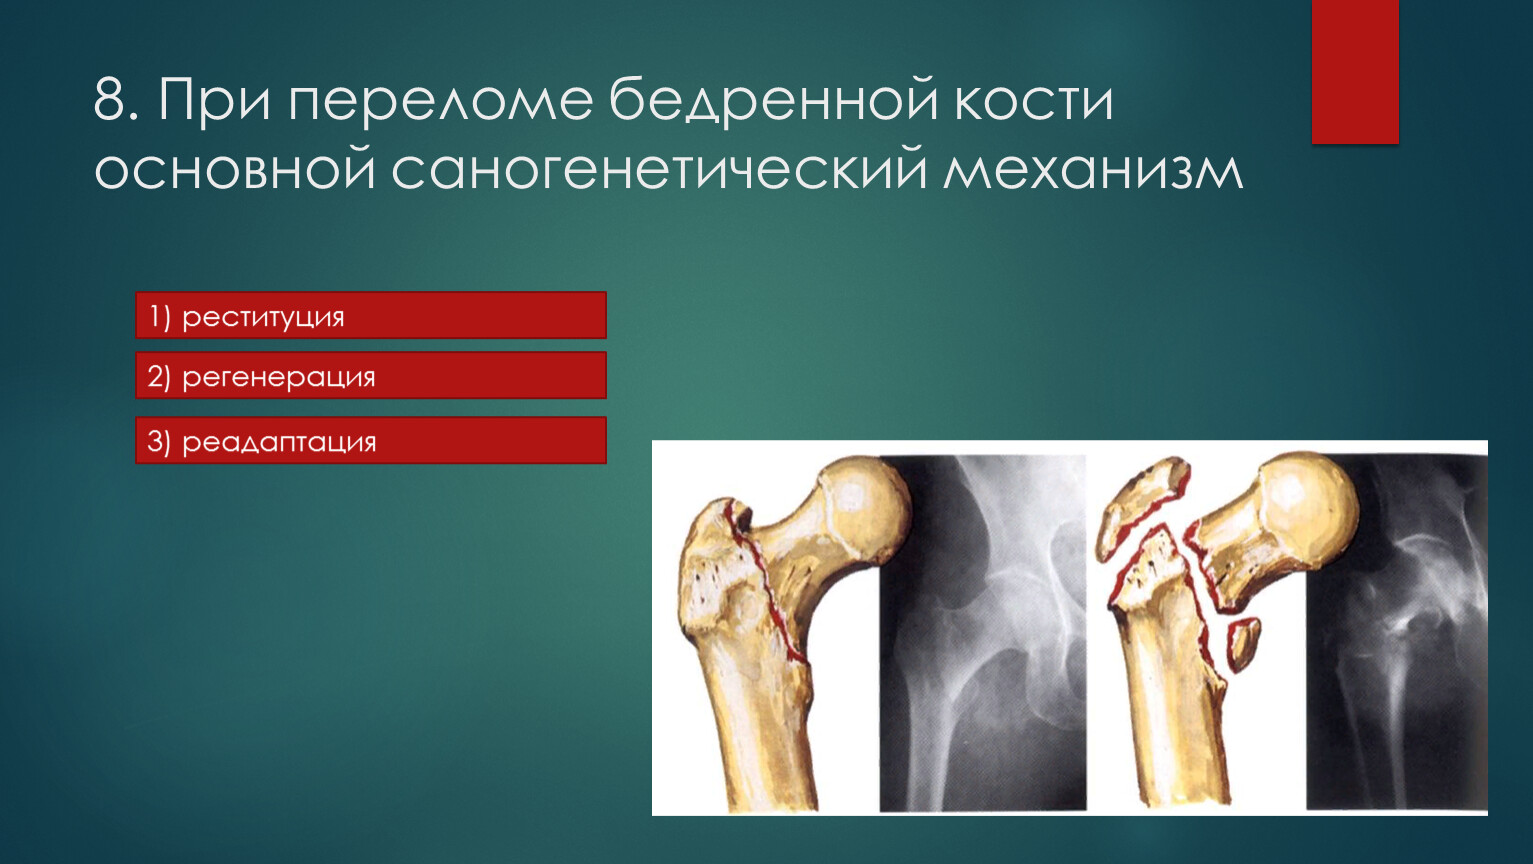 Саногенетический механизм при переломе бедренной кости